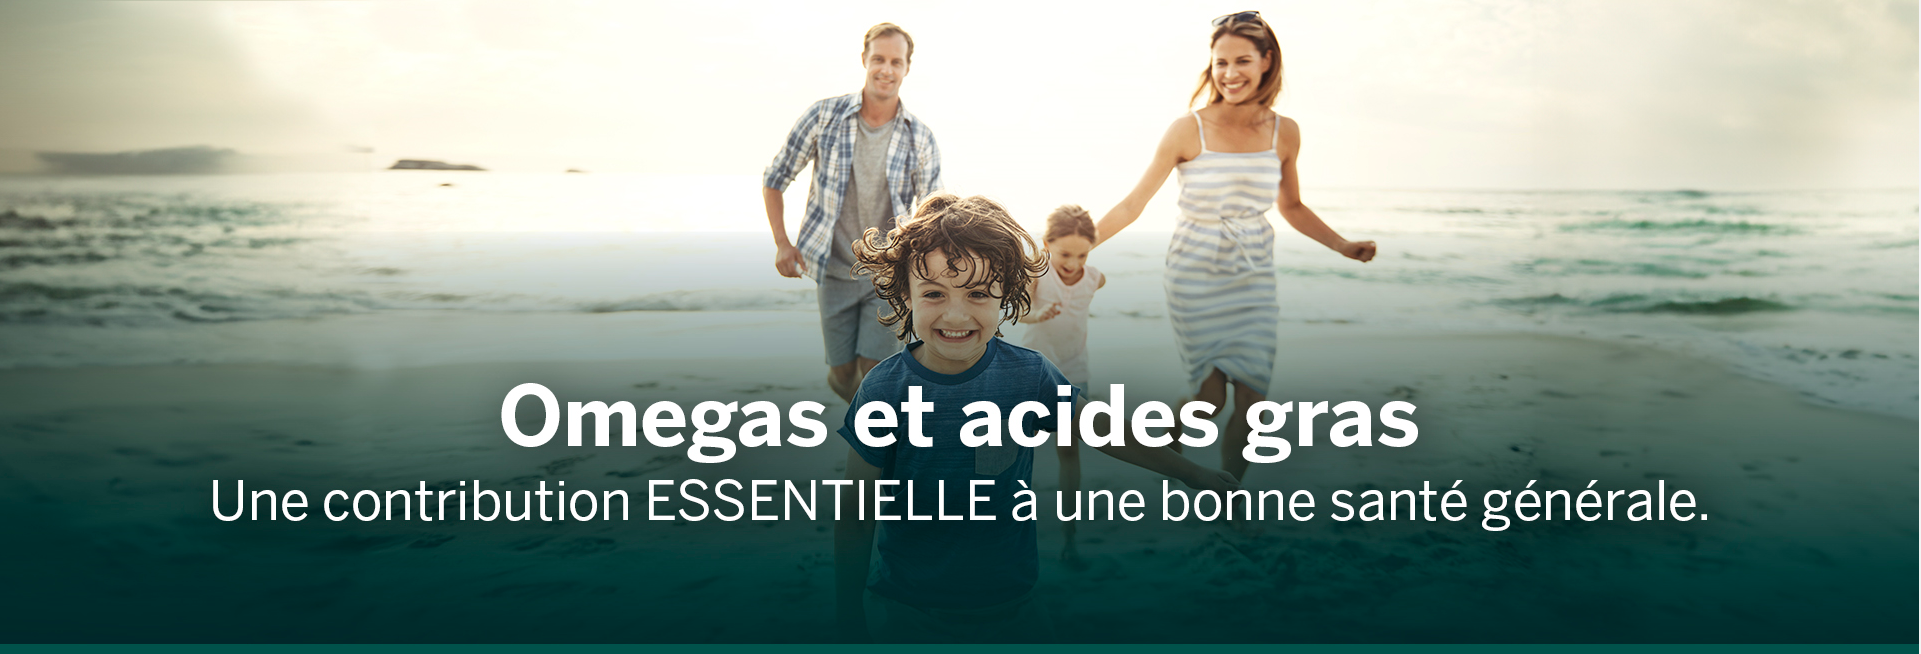 Les omégas et les acides gras sont une contribution essentielle à une bonne santé globale. Une photo d’une famille souriante et courant à la plage.